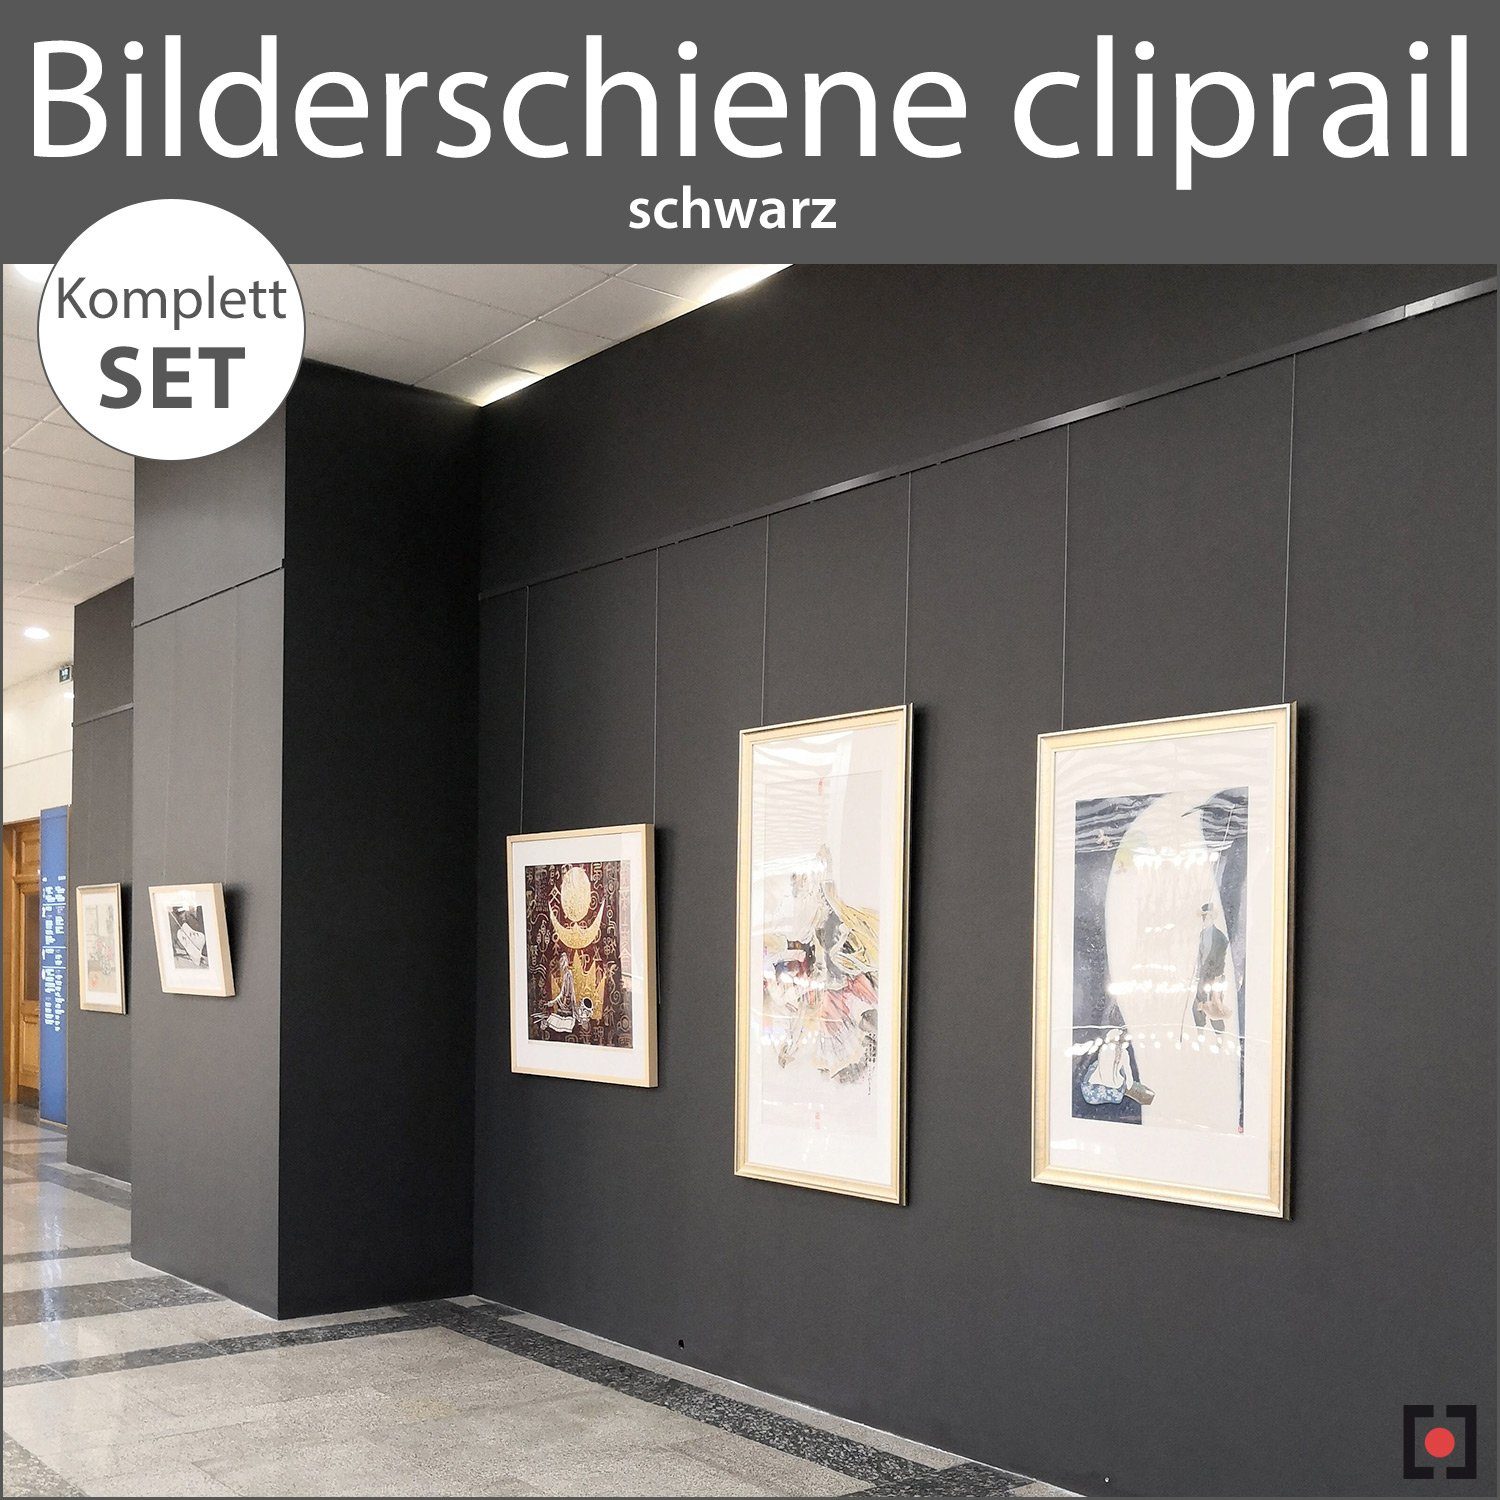 STRÜSSMANN® cliprail, Komplett-Set schwarz - Bilderschienen Wandregal Wandschienen schwarz